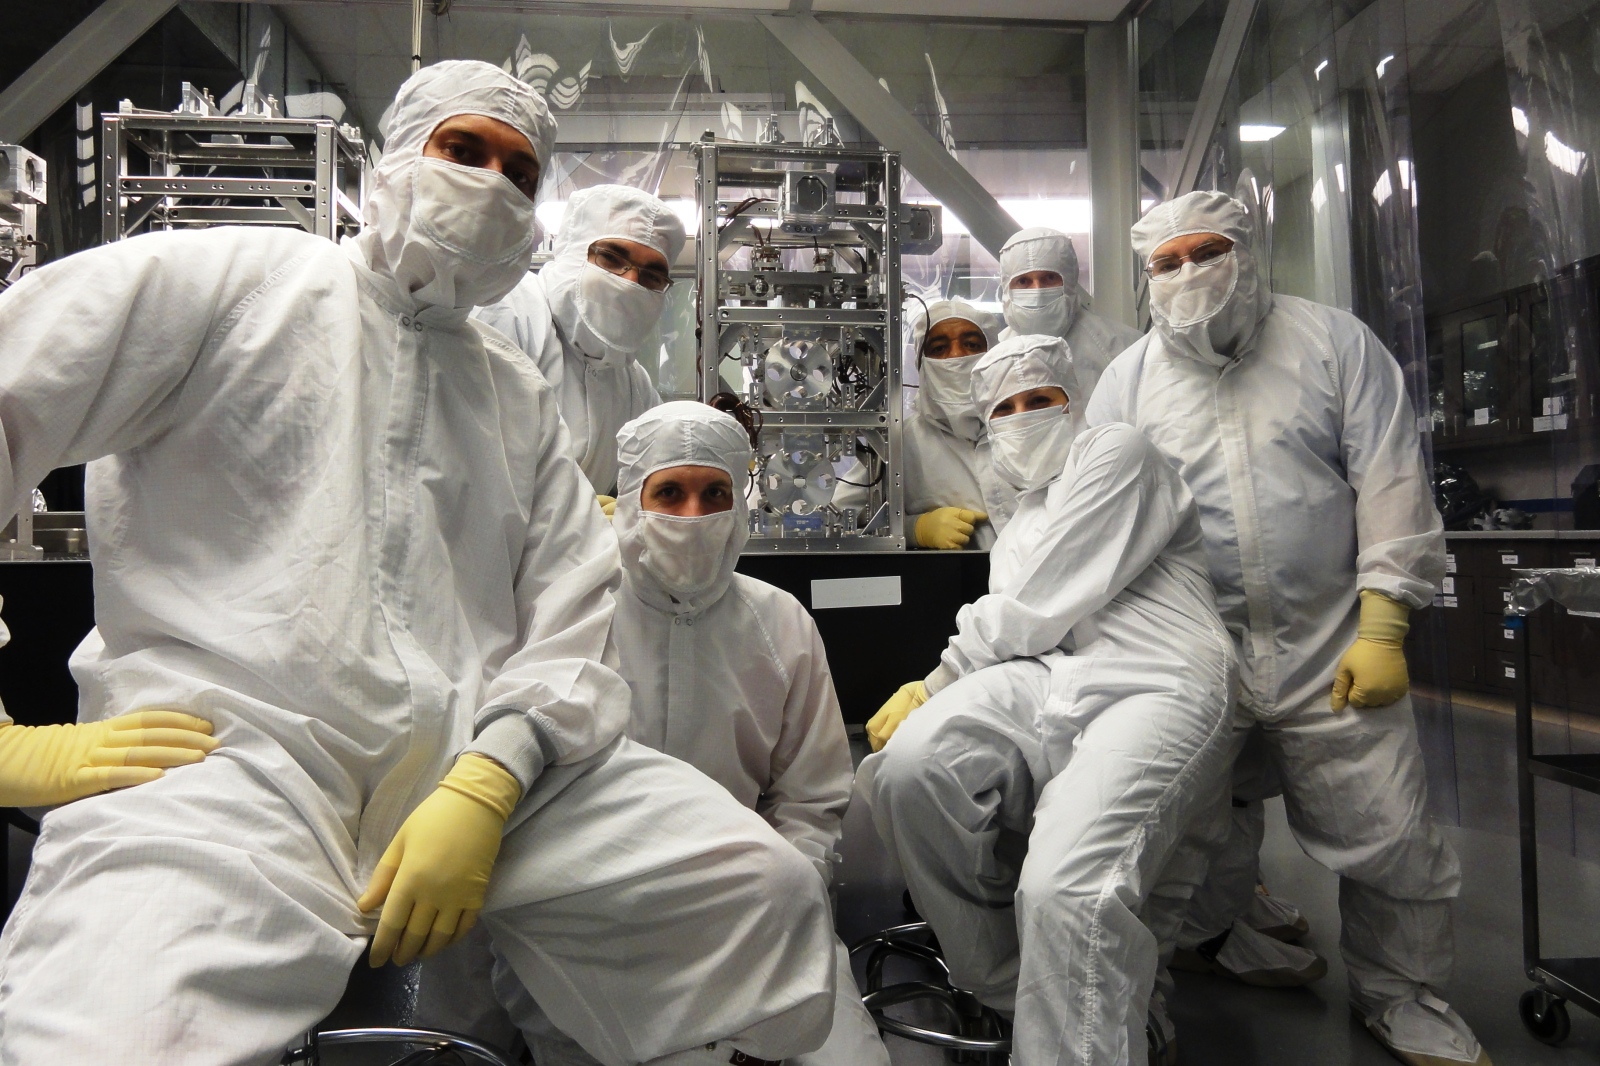 Some of the LIGO installation team